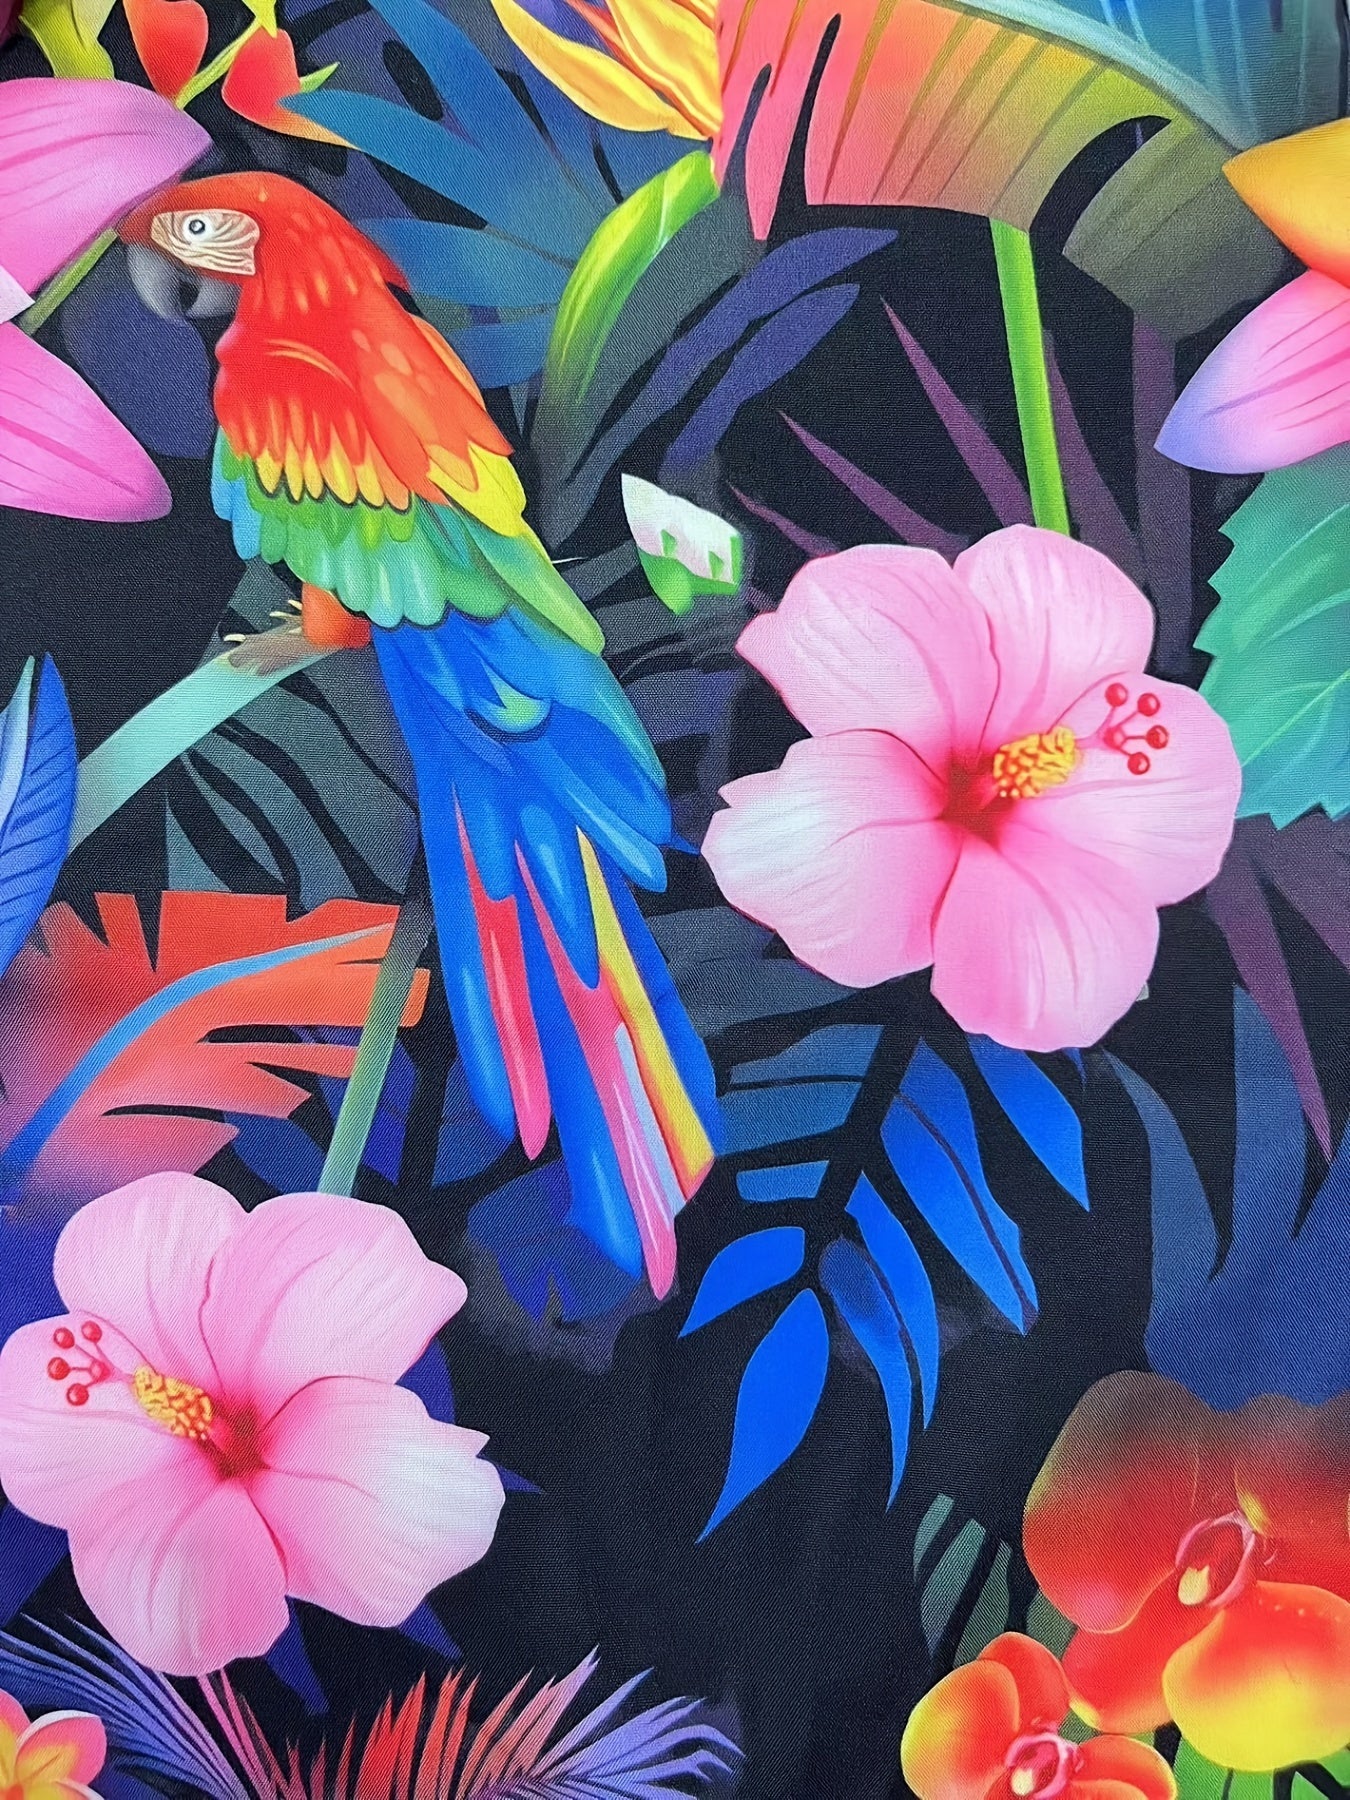 Blumen- Und Flamingo-Druck, 2-teiliges Herren-Outfit, Lässiges Camp-Kragen-Revers-Knopf-Kurzarmhemd, Hawaii-Hemd Und Kordelzug-Shorts-Set Für Den Sommer